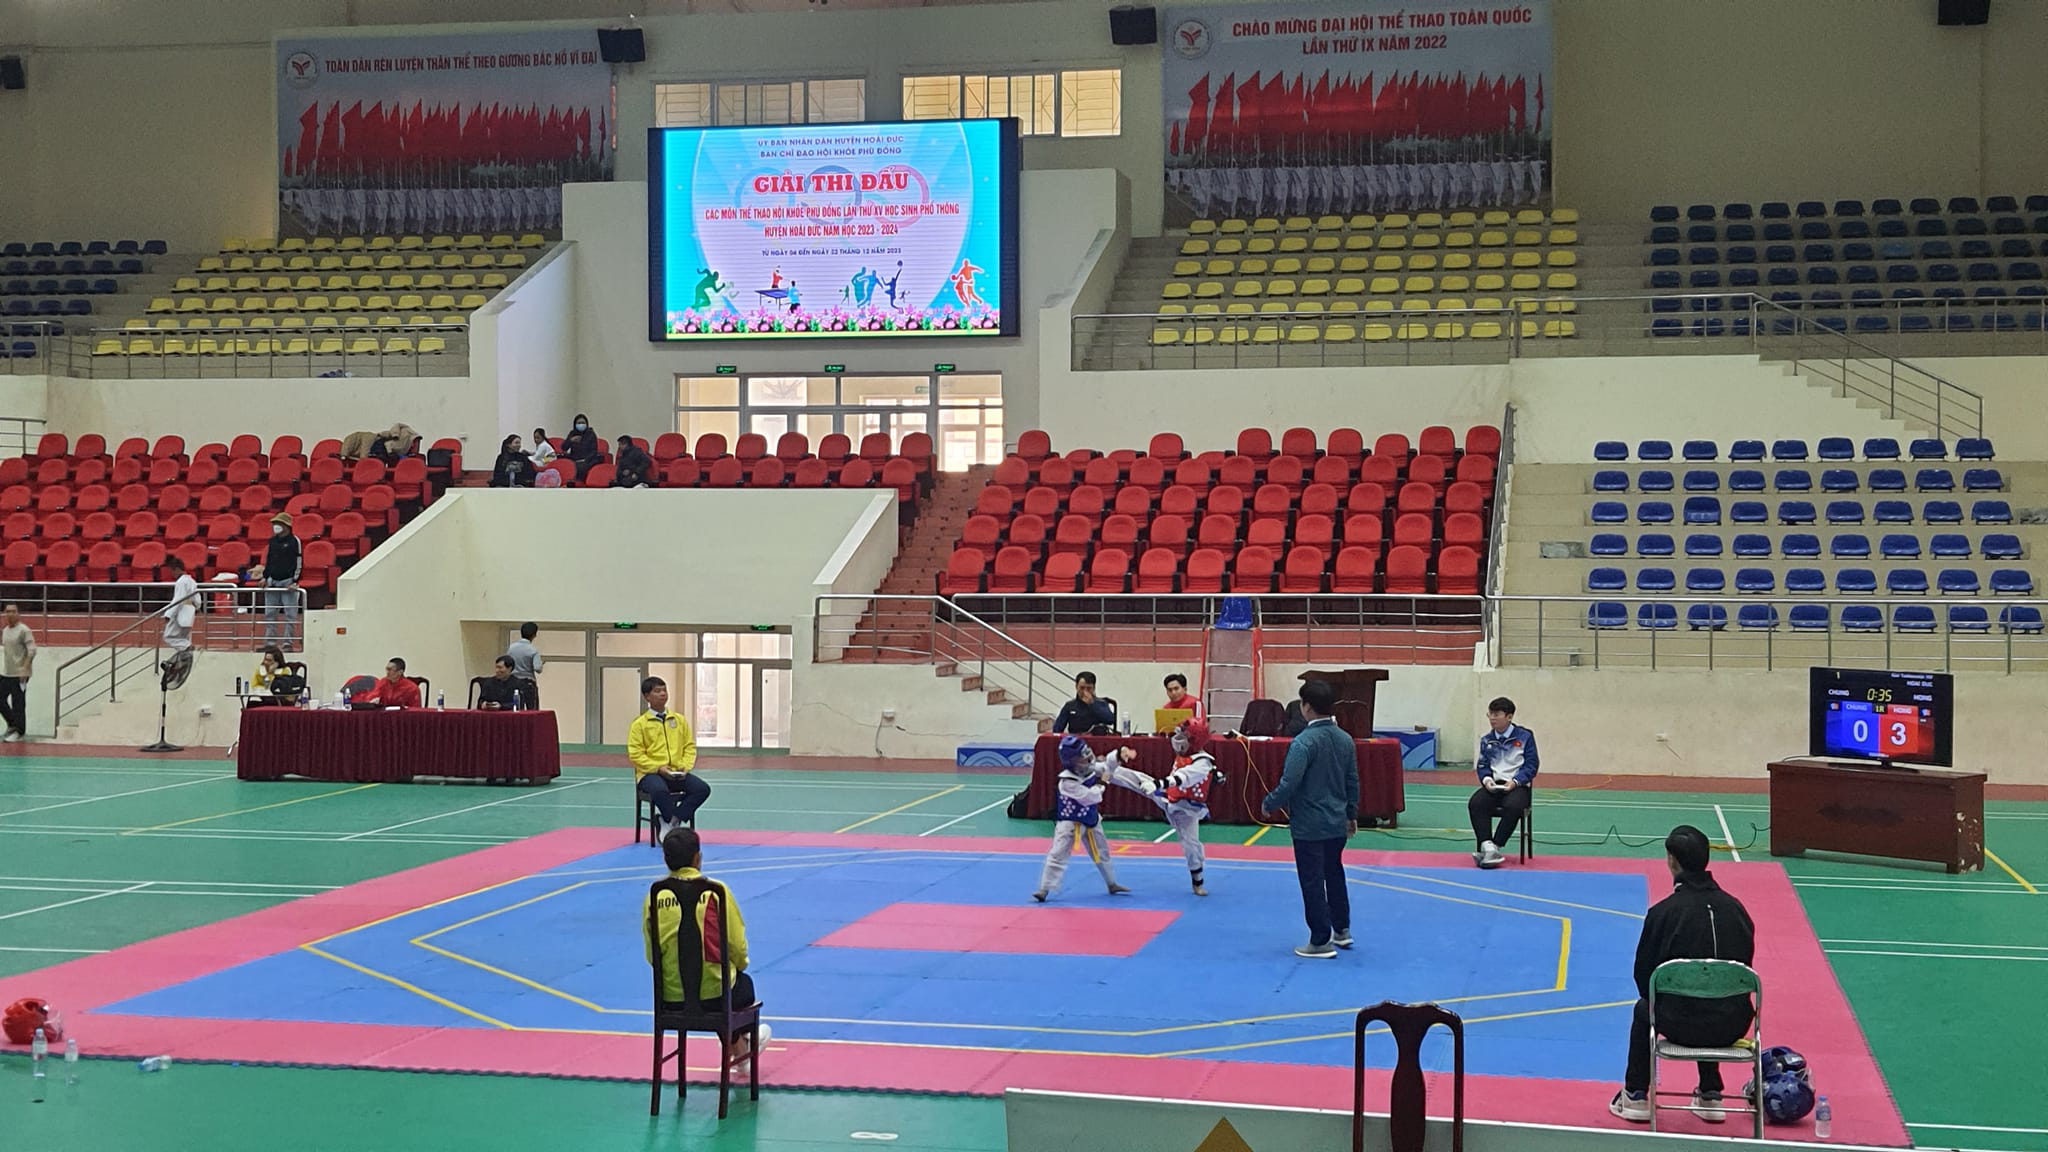 Đội thể thao trường Tiểu học Vân Canh kết thúc Hội khỏe Phù Đổng huyện Hoài Đức với 5 giải Nhất, 2 giải Nhì, 2 giải Ba